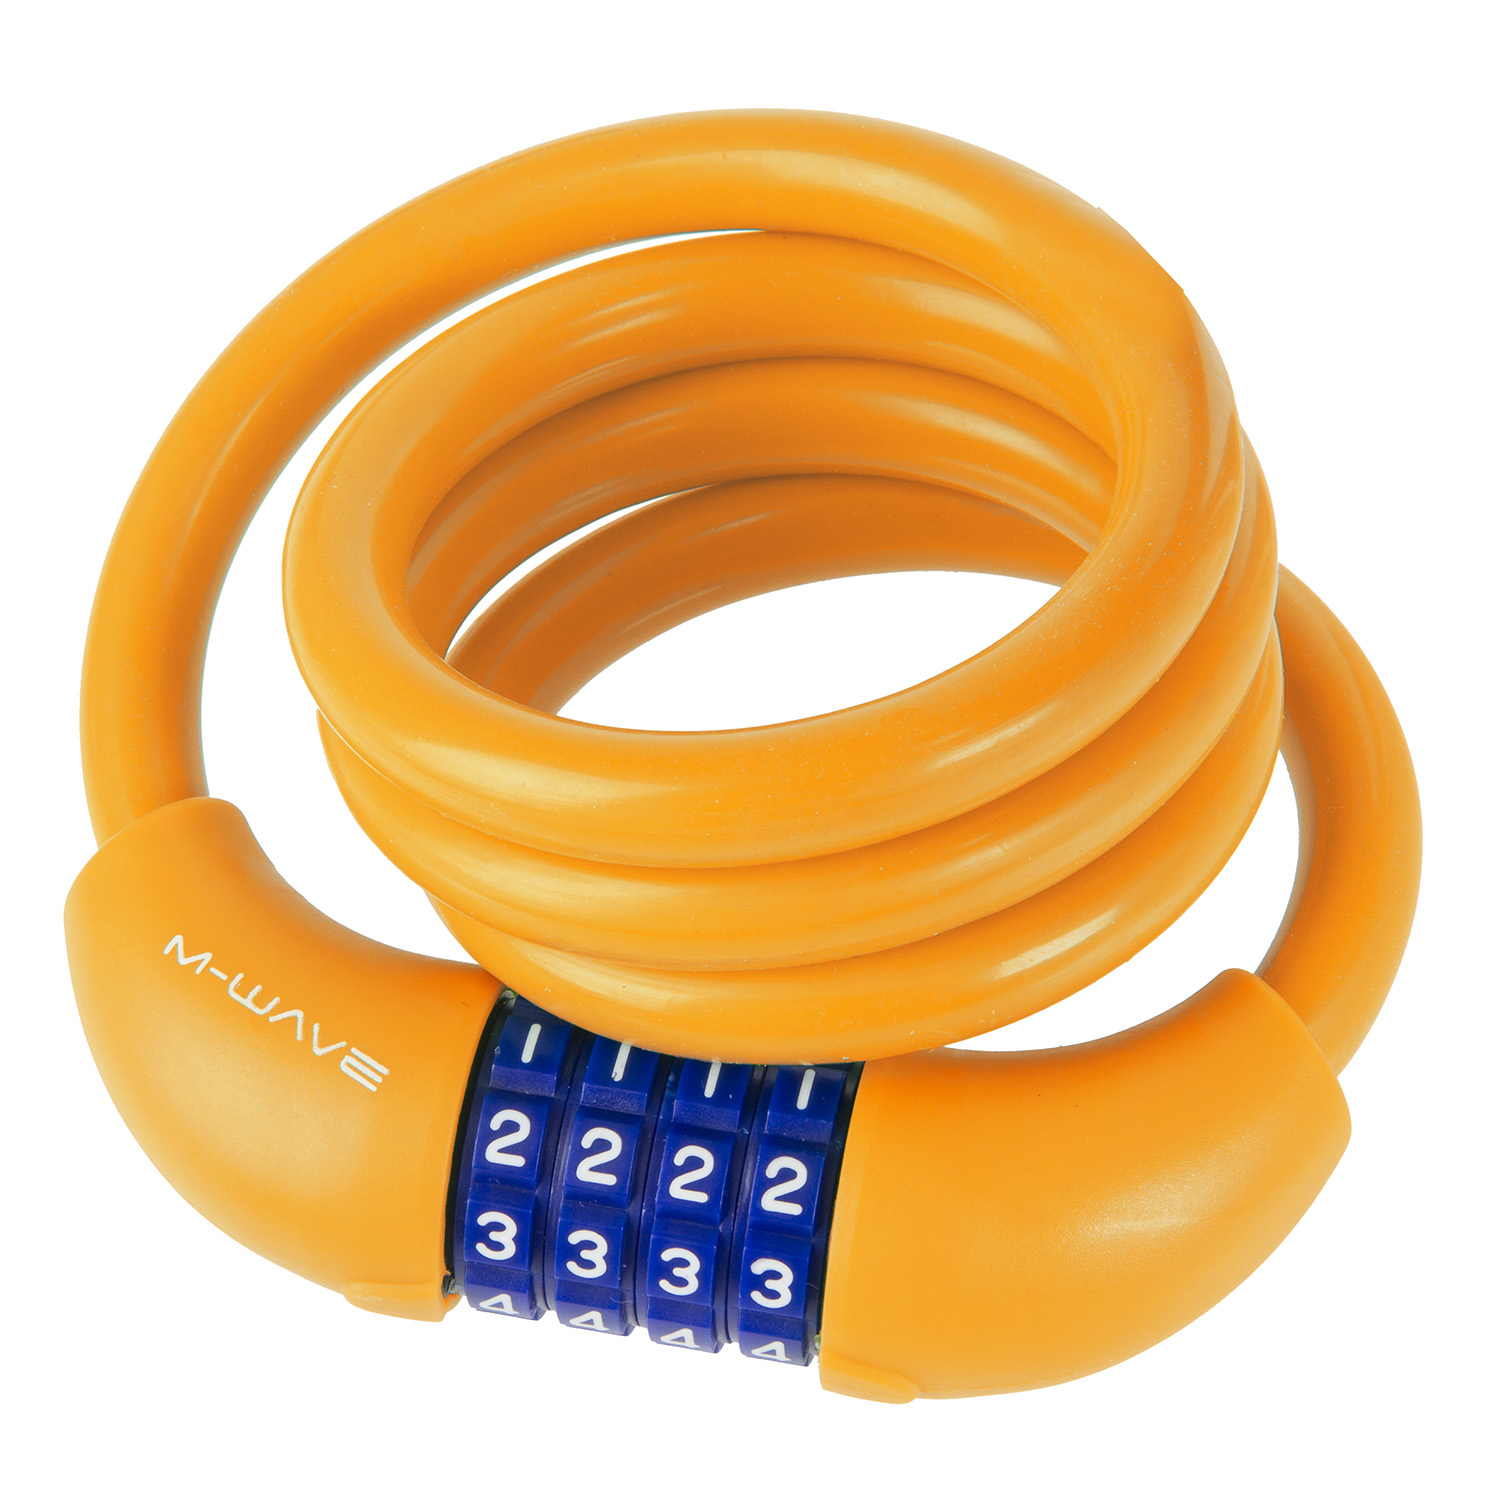 ZAHLEN Spiralschloss SILIKON 12 mm x 1000 mm in Orange neon